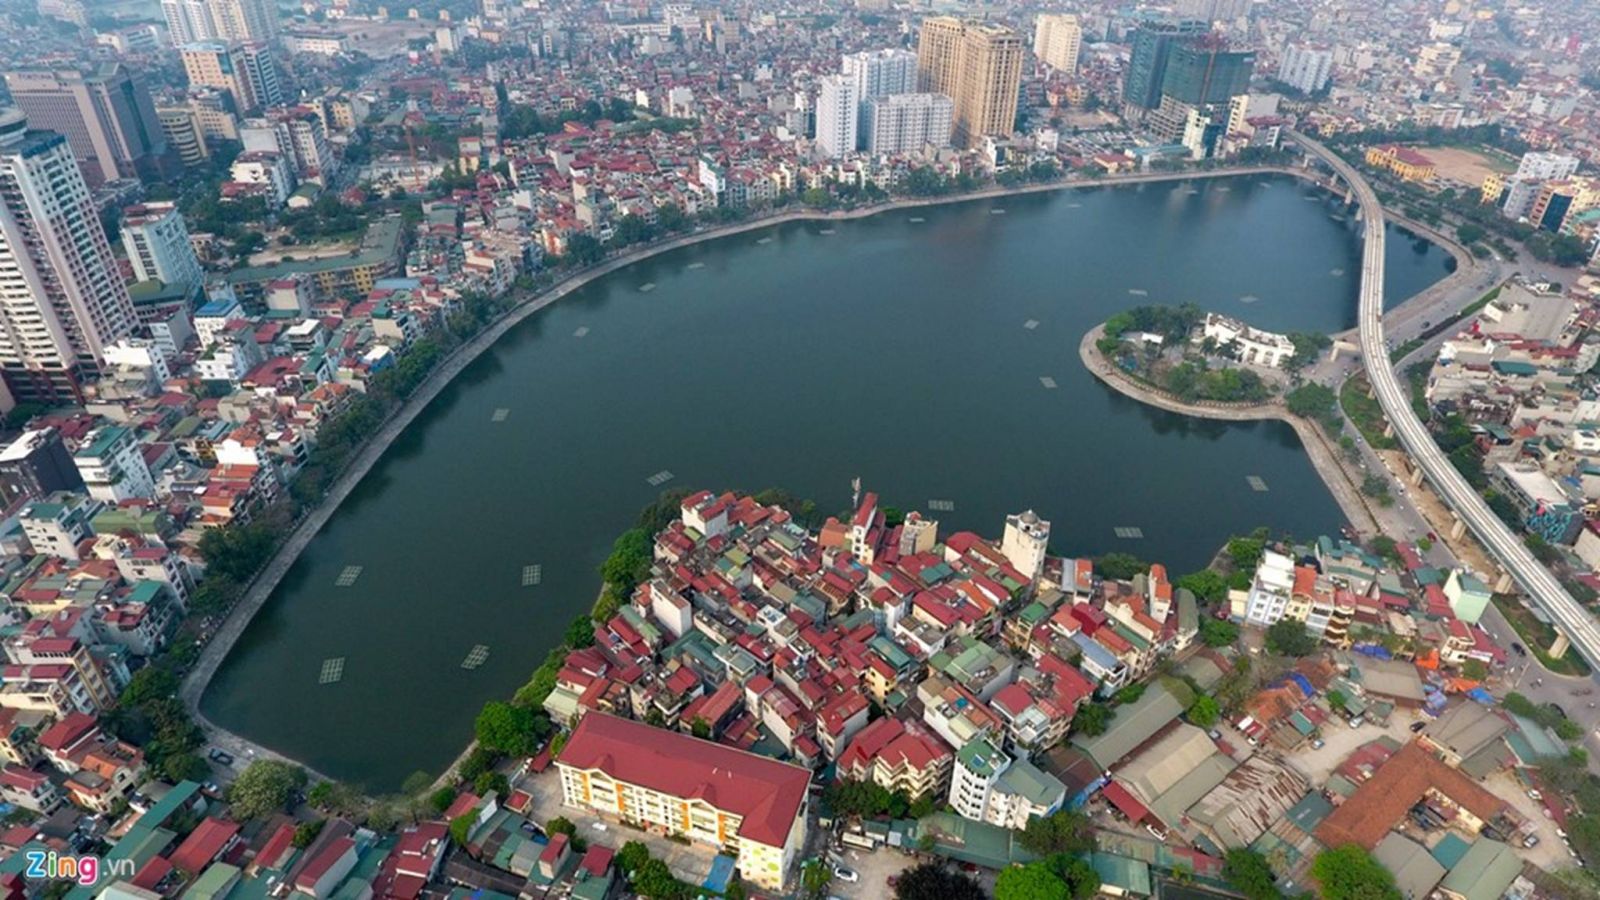 Bảng giá đất quận Đống Đa, thành phố Hà Nội cập nhật mới nhất năm 2019 | Reatimes.vn